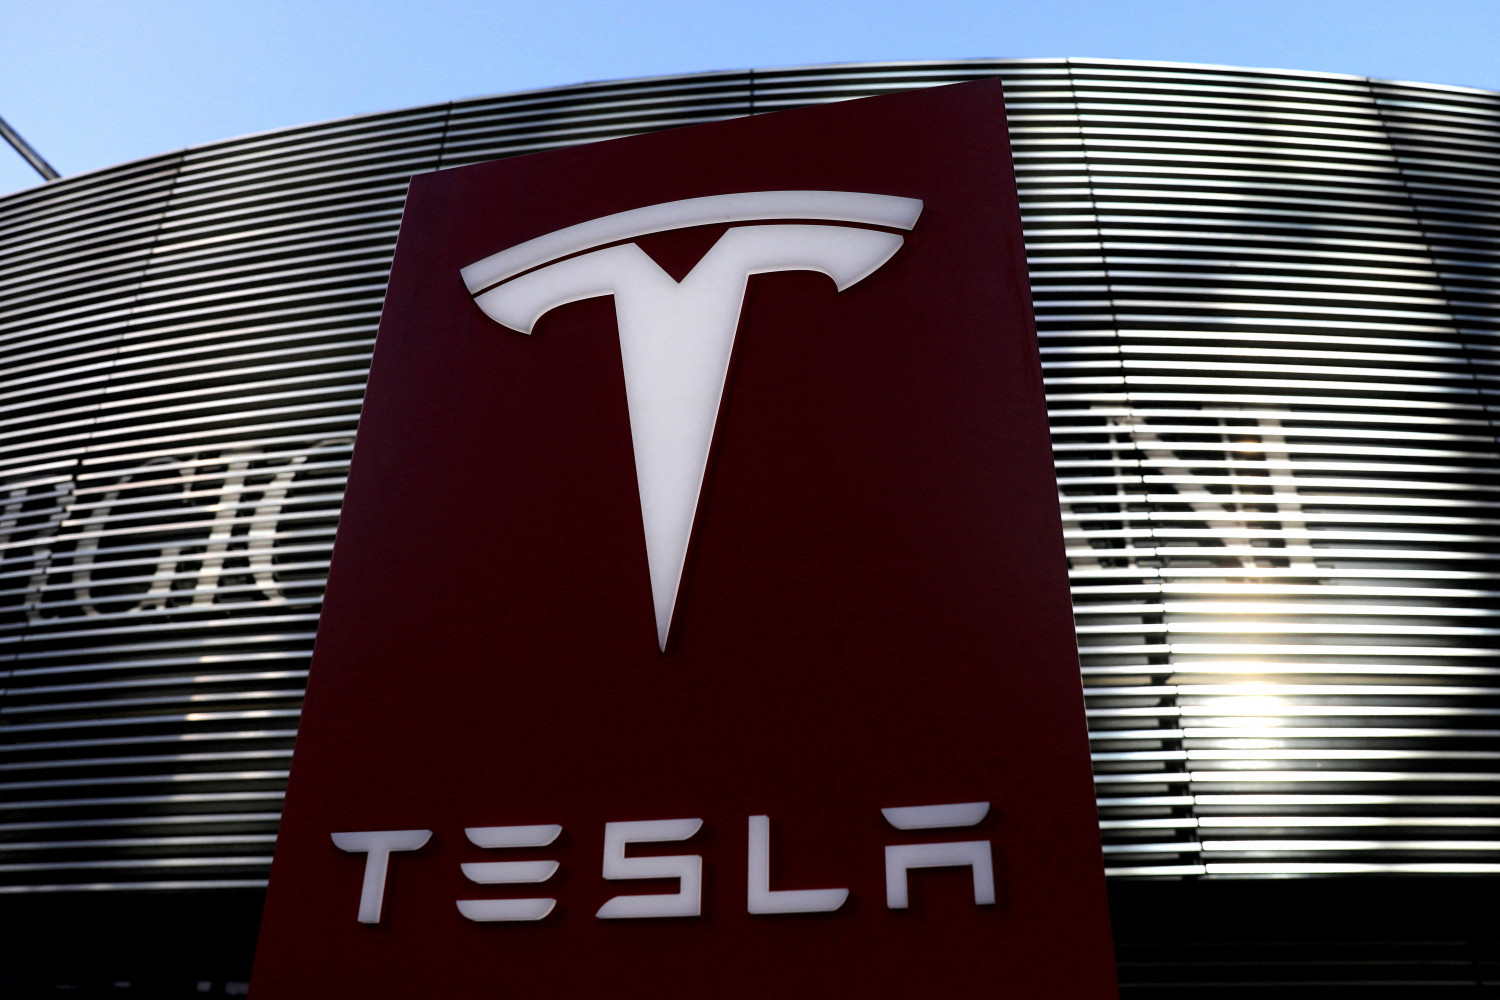 Desplome de Tesla en bolsa tras anunciar 'split' de acciones - Bolsamania.com